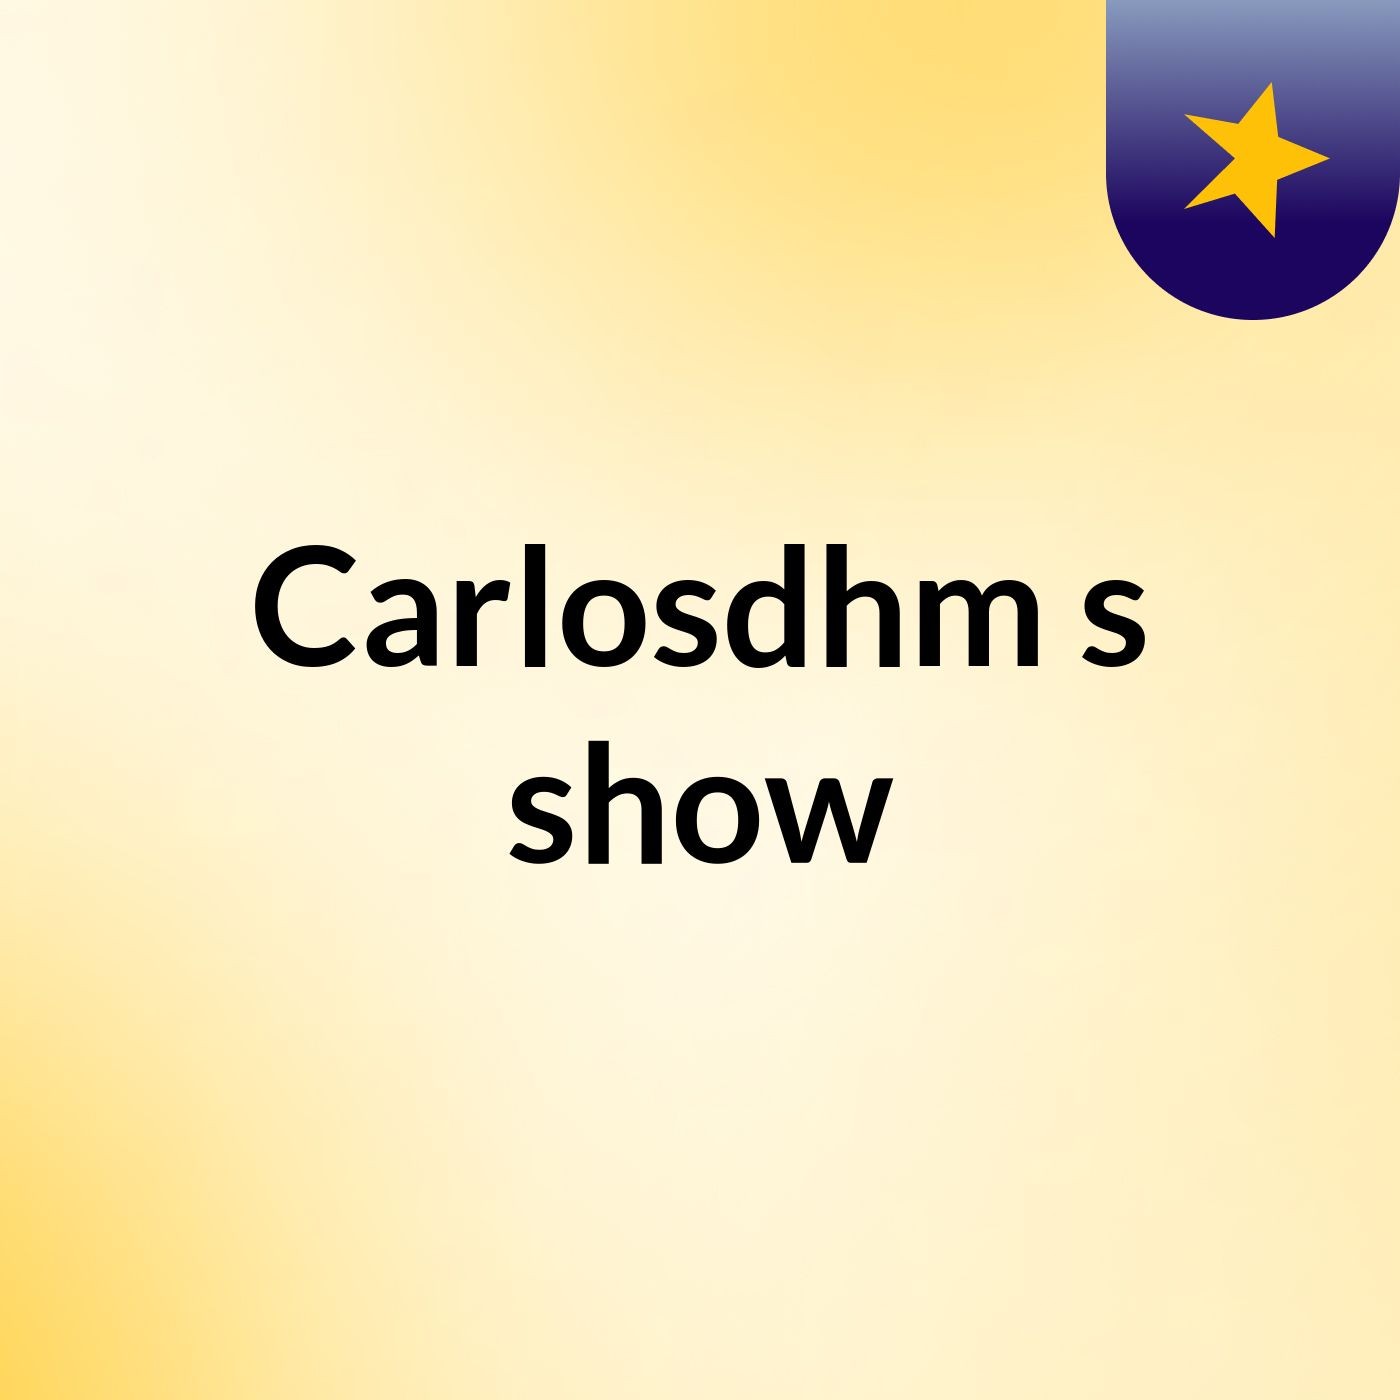 Carlosdhm's show